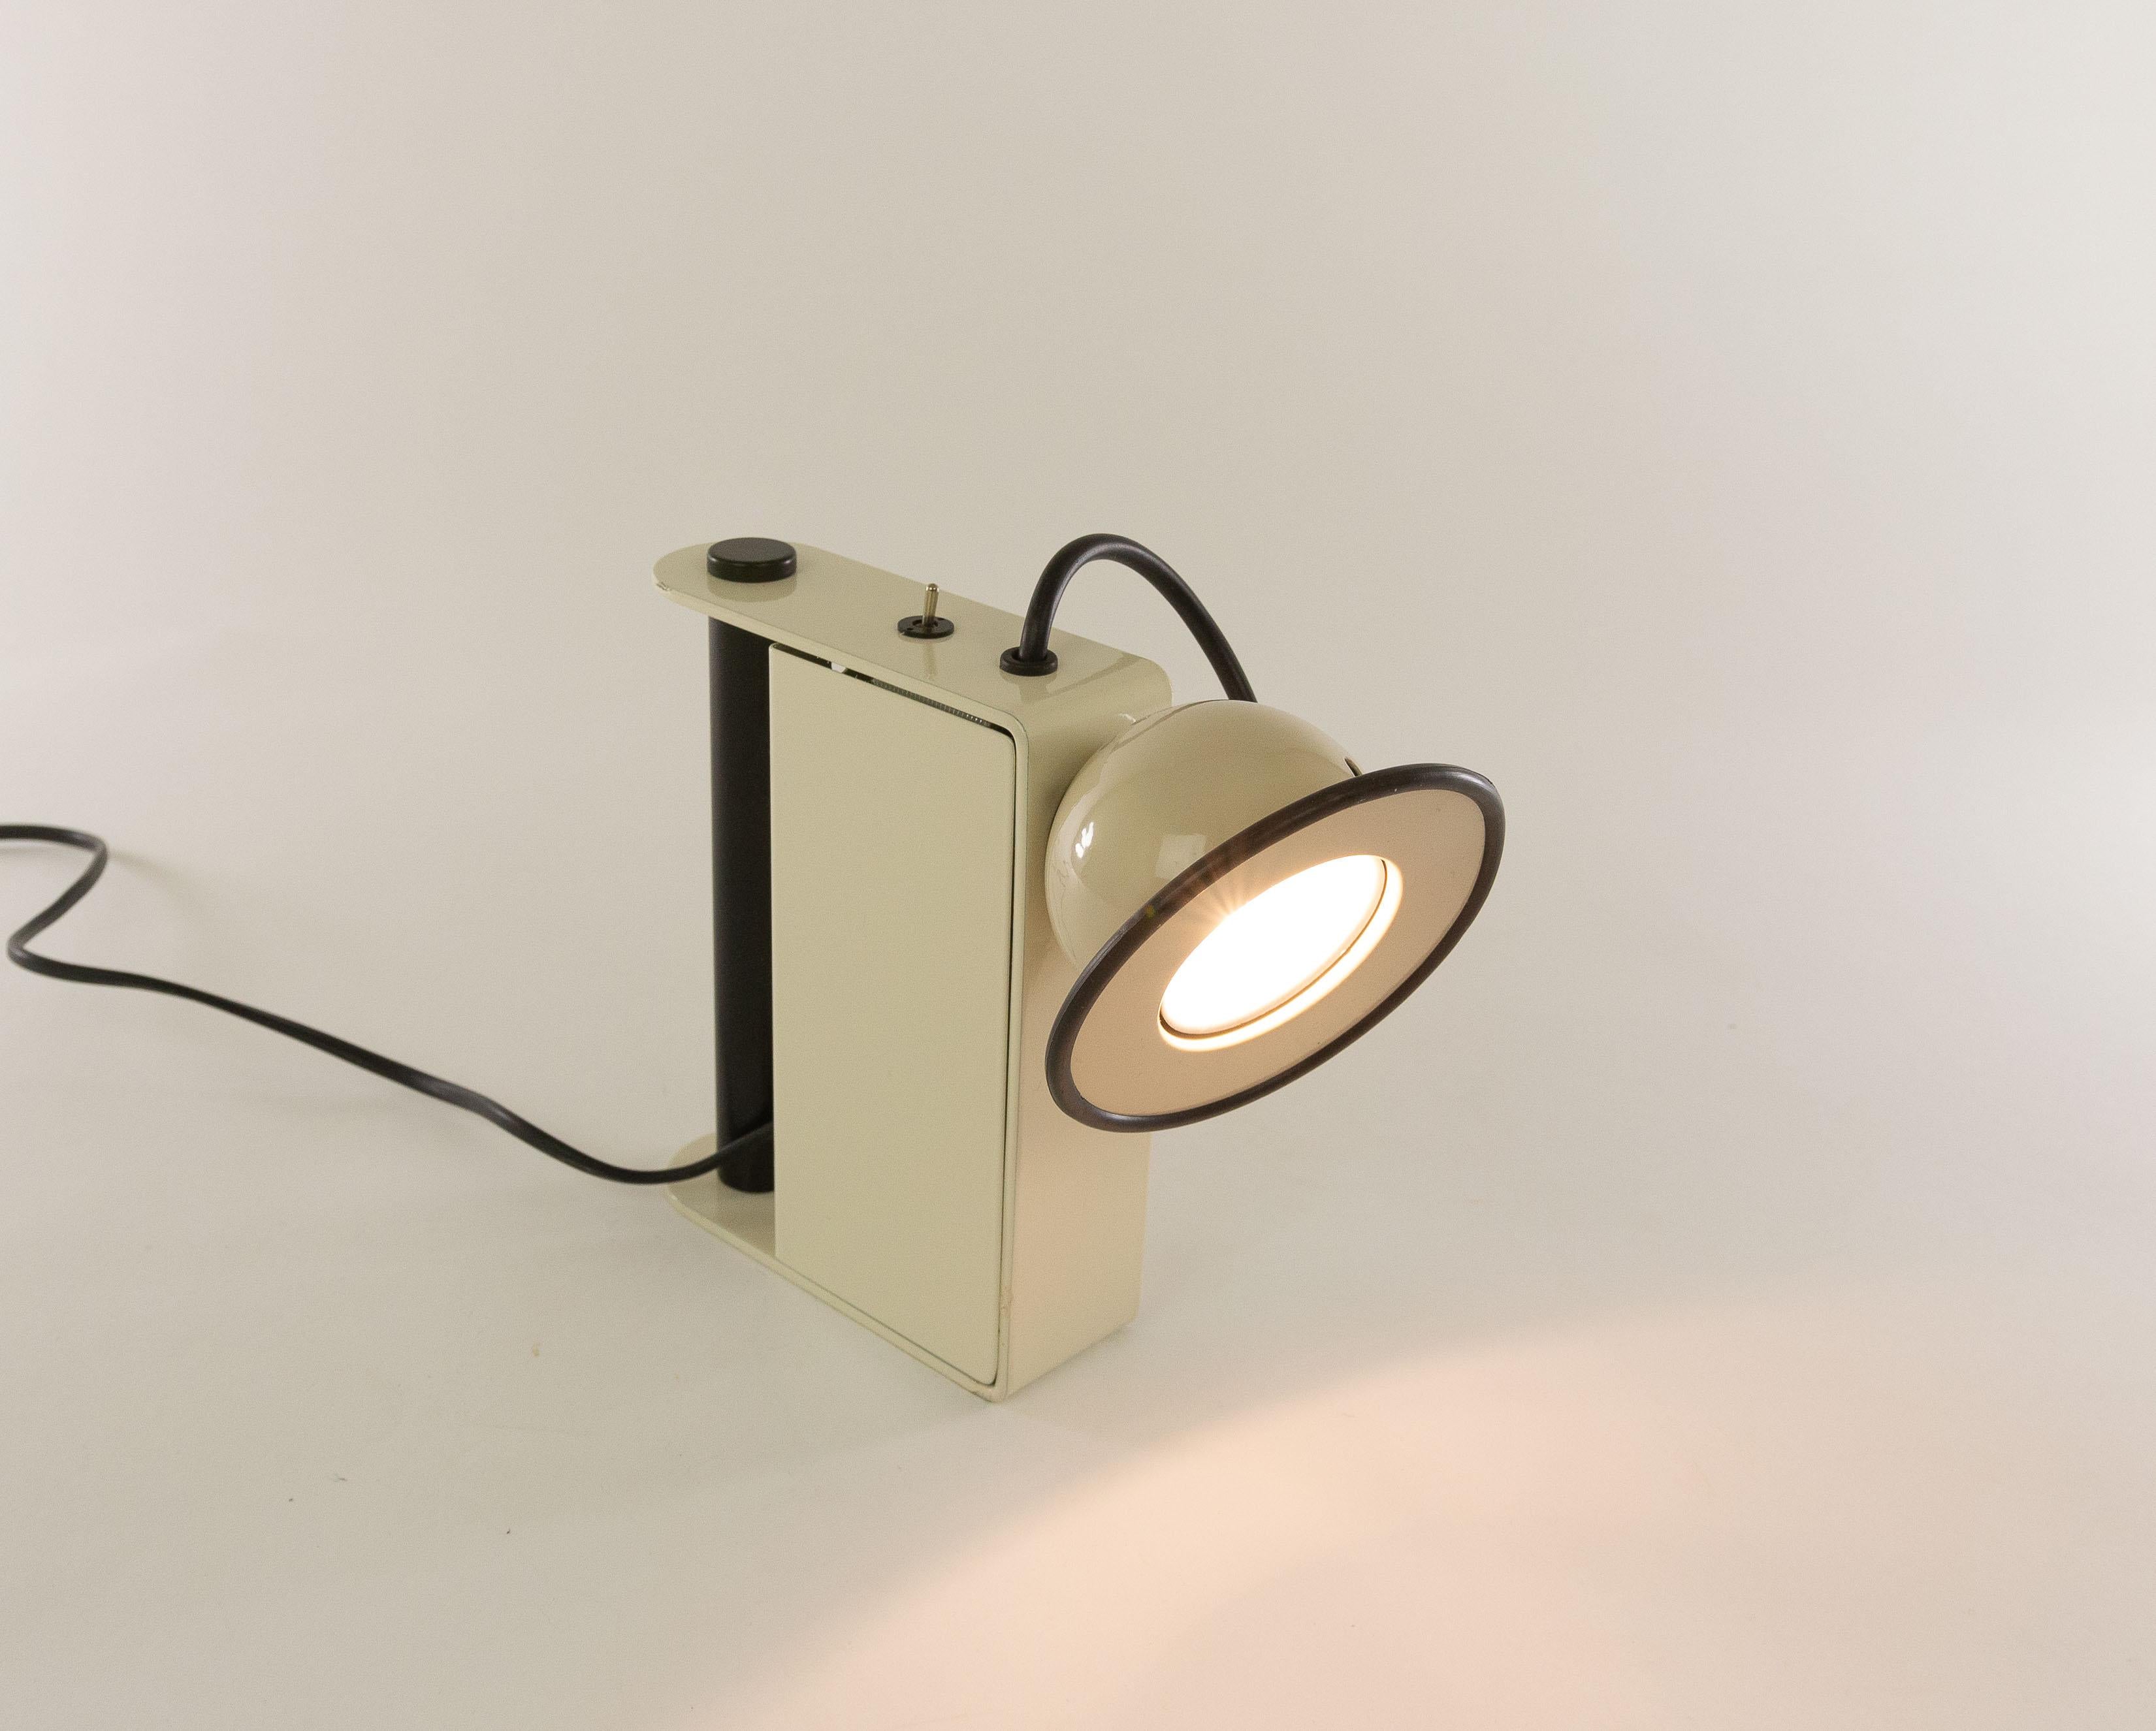 Lampe de table Minibox blanche conçue par Gae Aulenti et Piero Castiglioni et fabriquée par Stilnovo en 1980.

Cette lampe de table halogène peut également être utilisée comme une 